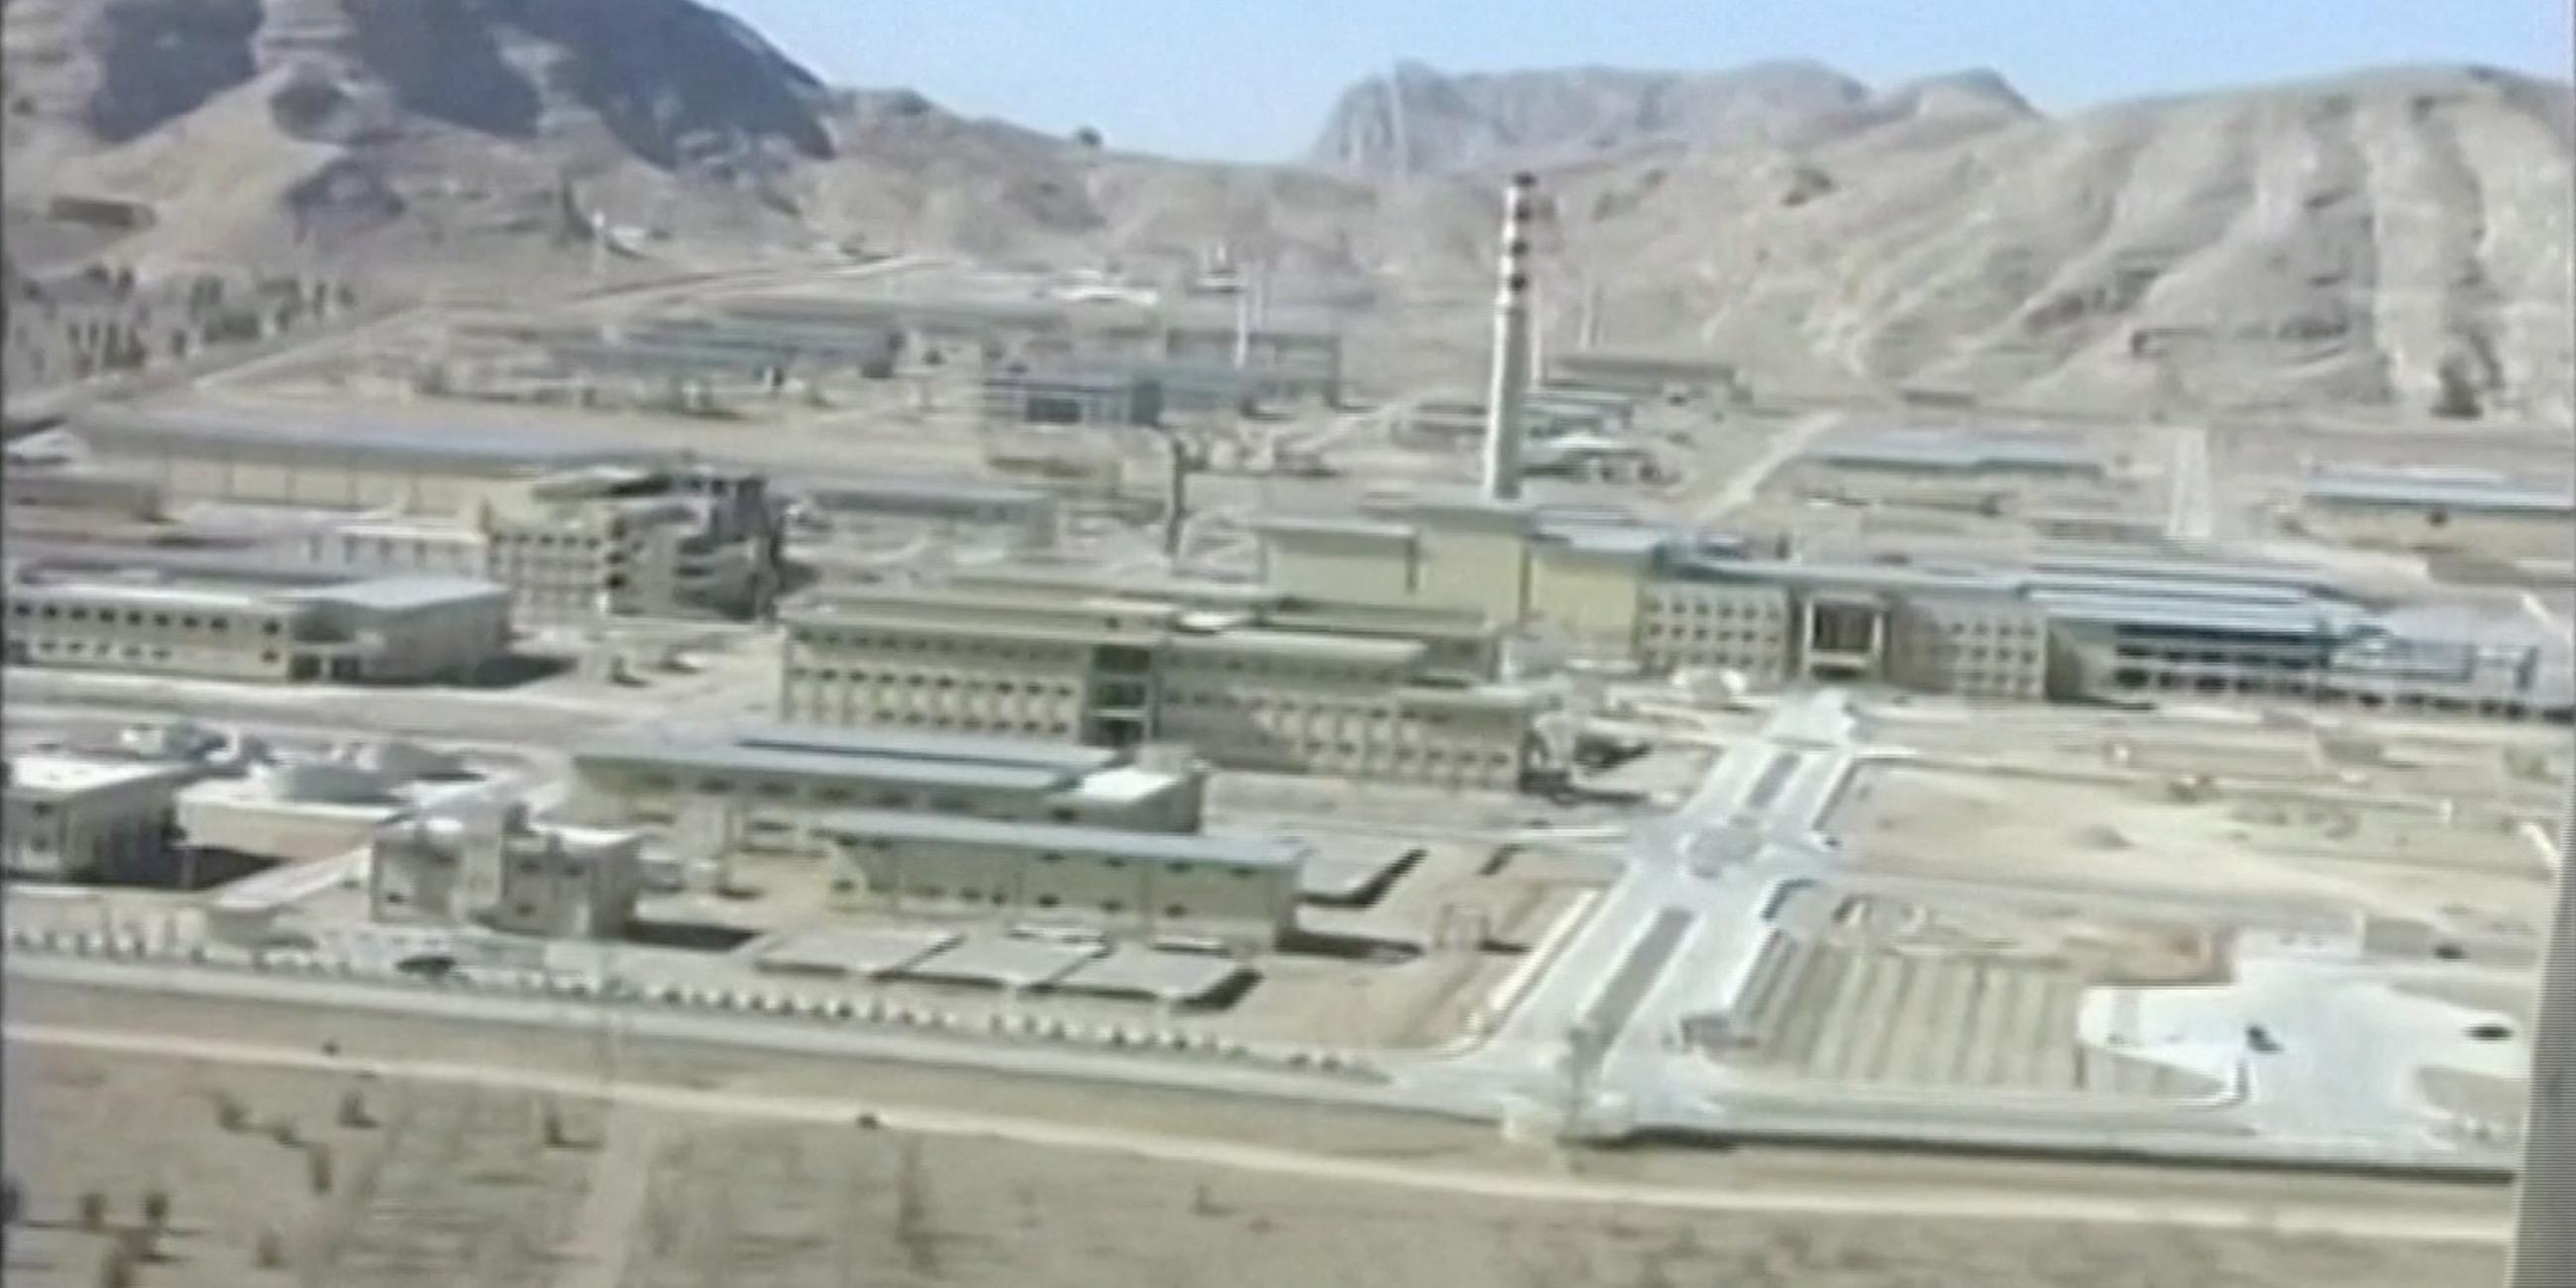 Luftbild der Nuklearanlage in Isfahan aus dem Jahr 2005